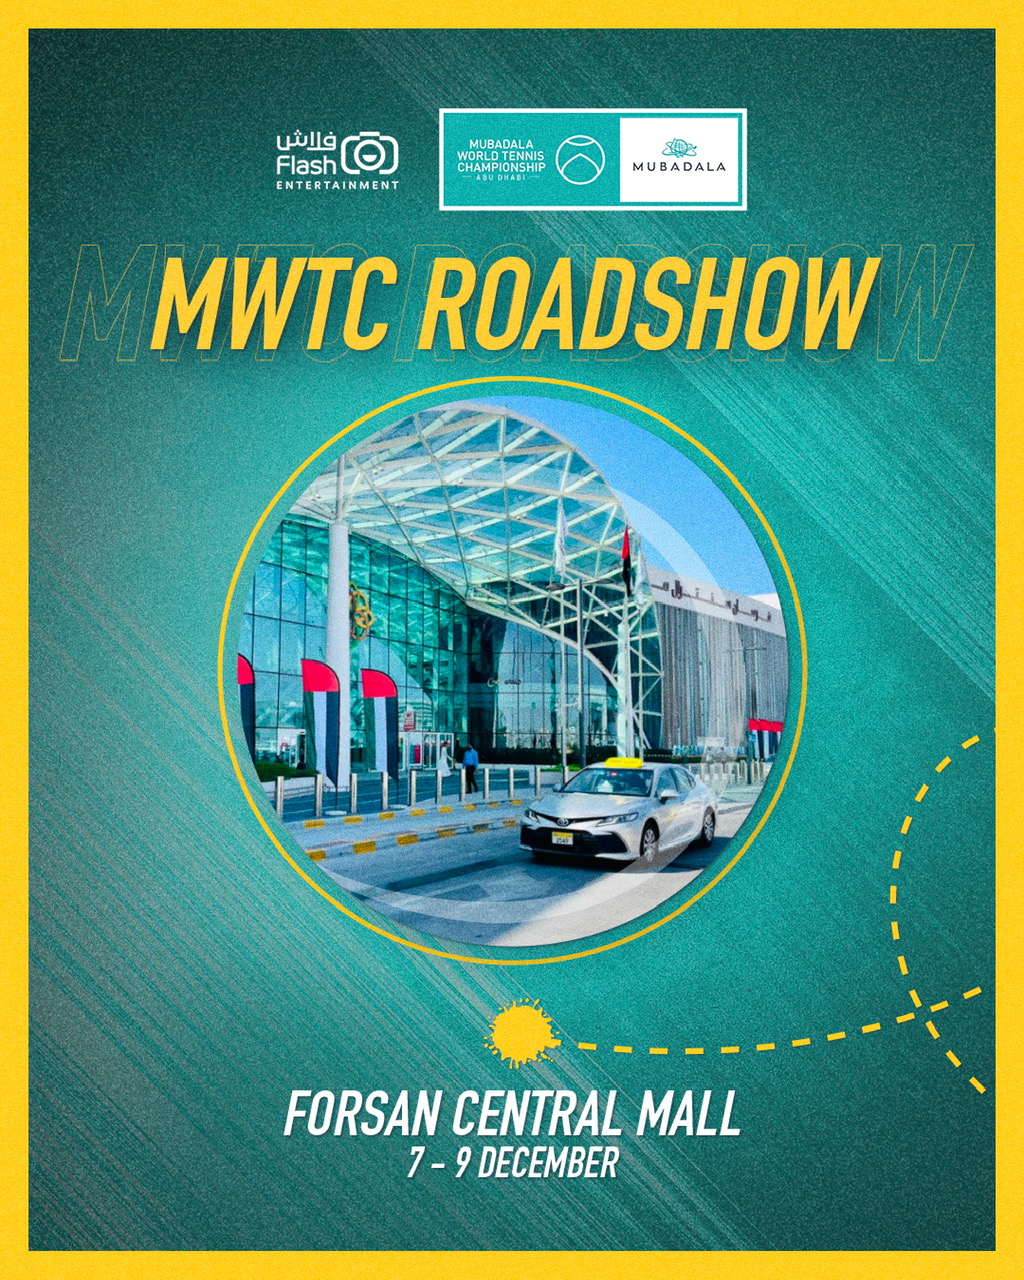 Mubadala World Tennis Championship Roadshow To Tourabu Dhabi Malls With Exciting Activities